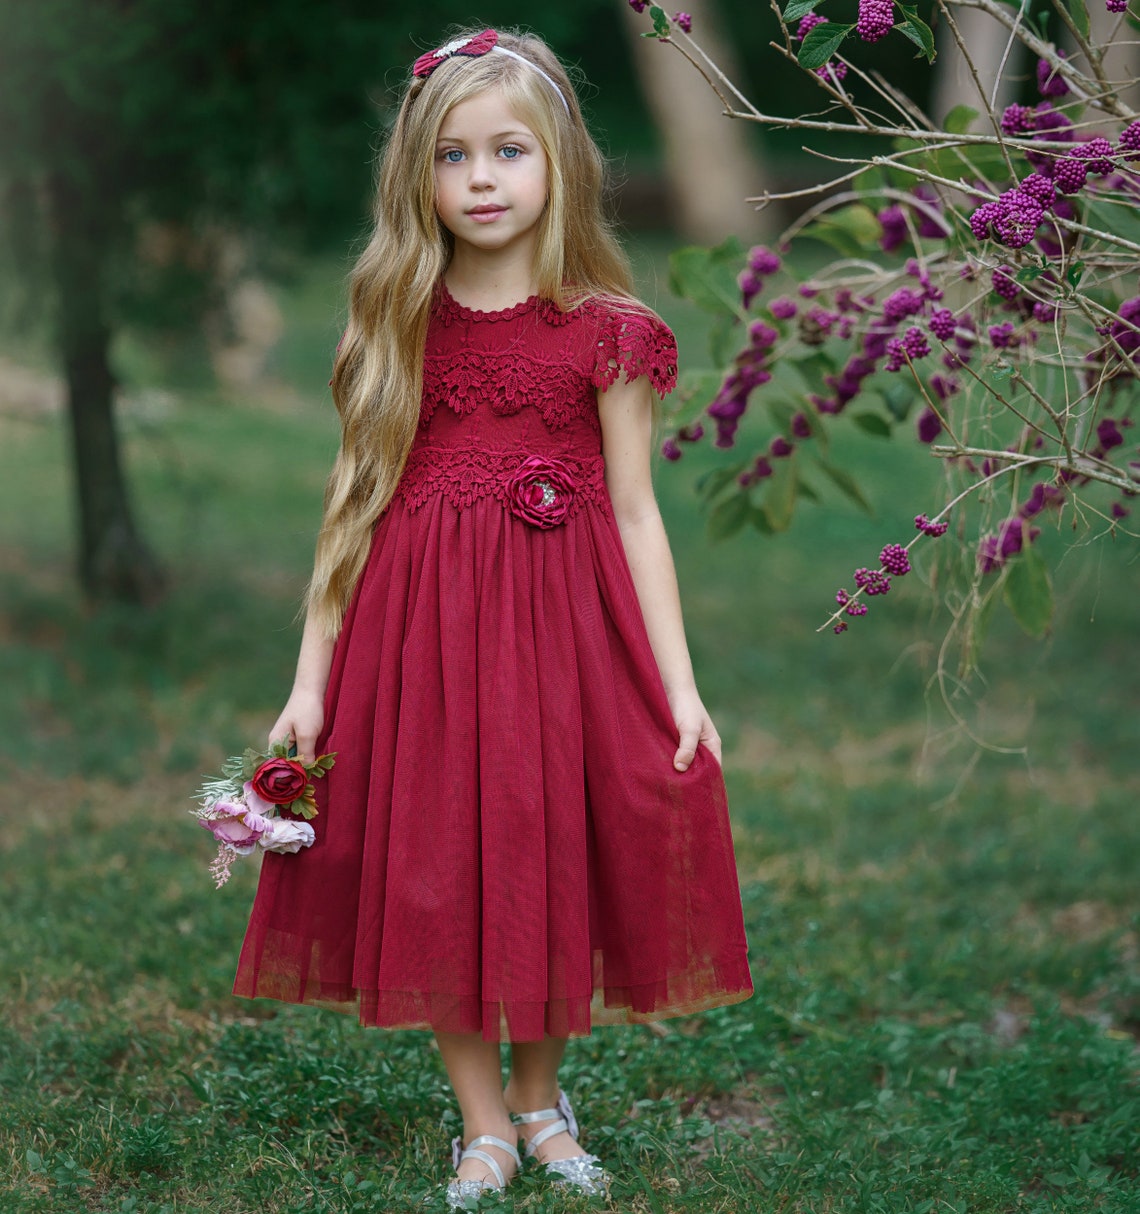 Tulle Flower Girl Dress Burgundy Lace Flower Girl Dresses | Etsy